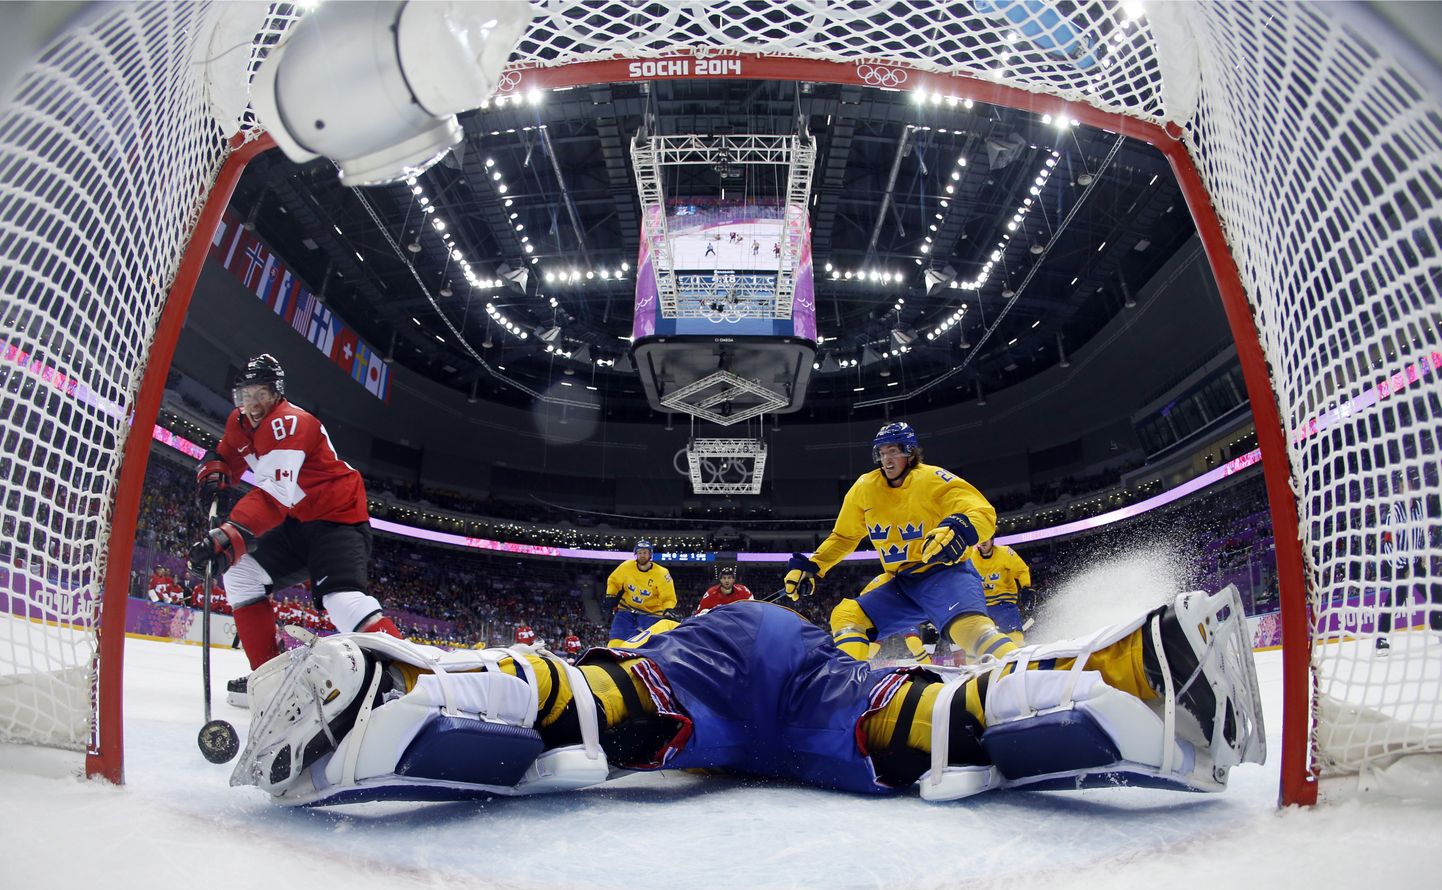 Viimati nägi NHLi tähti olümpiaturniiril 2014. aastal.